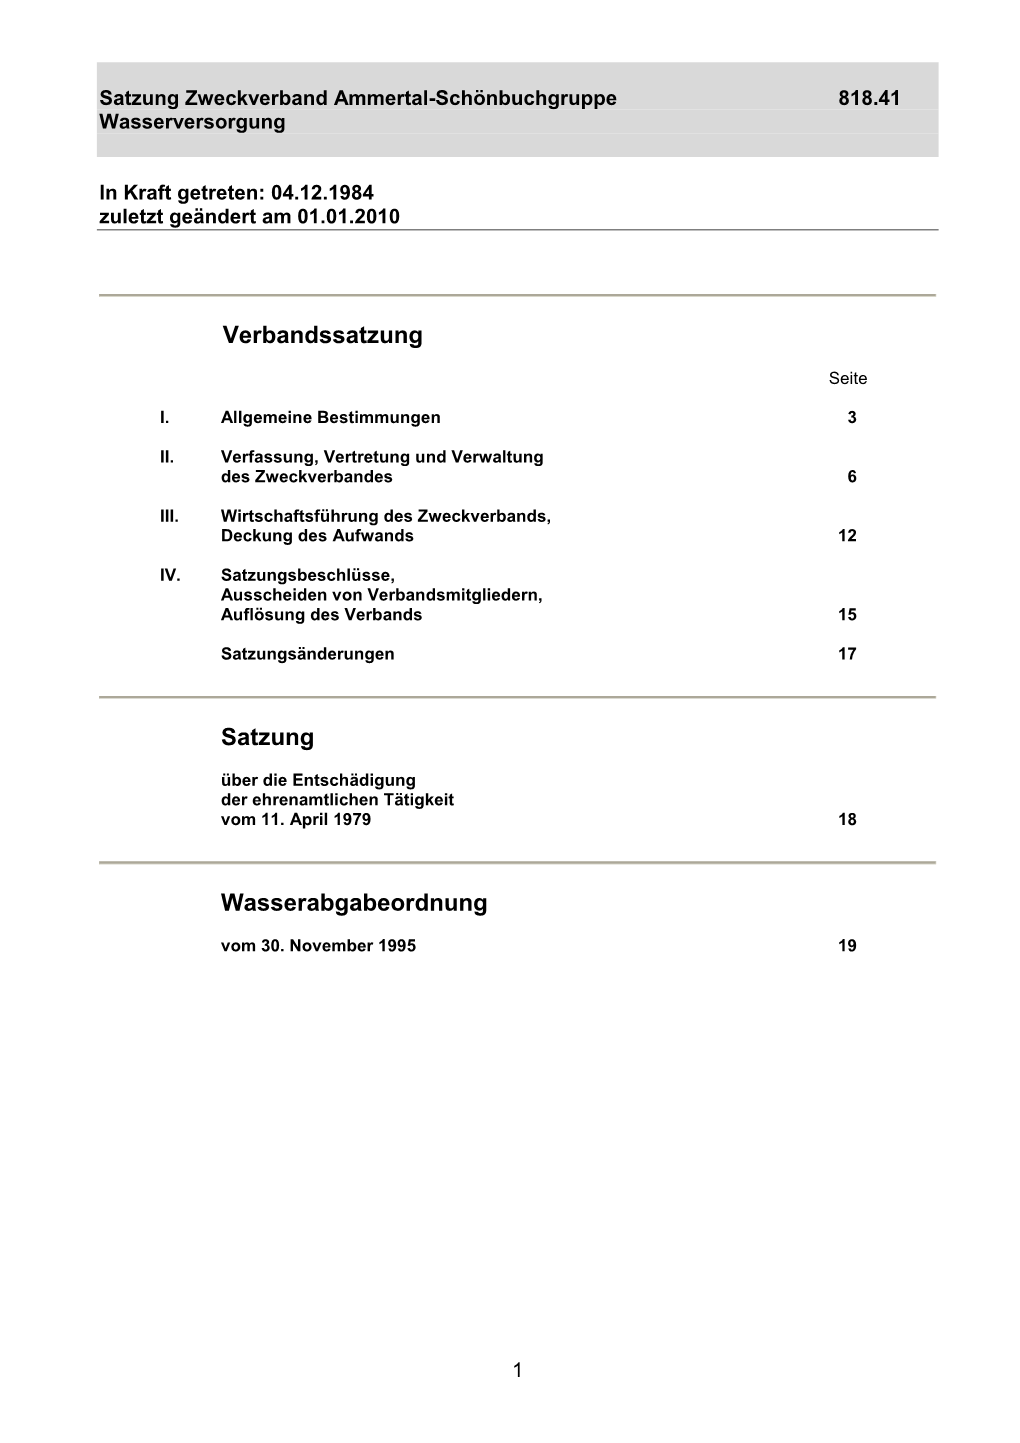 Satzung Zweckverband Ammertal-Schönbuchgruppe 818.41 Wasserversorgung